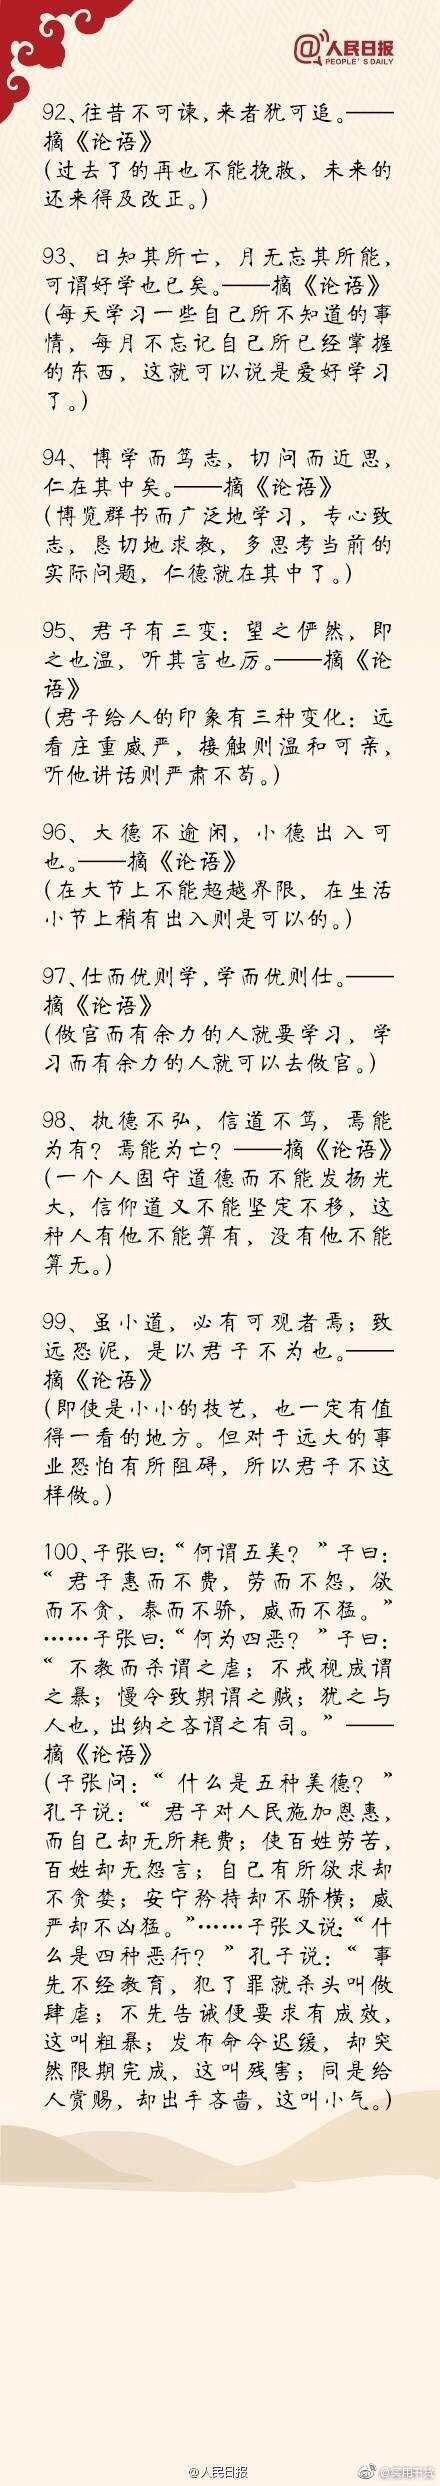 中国古籍中100句最经典语录